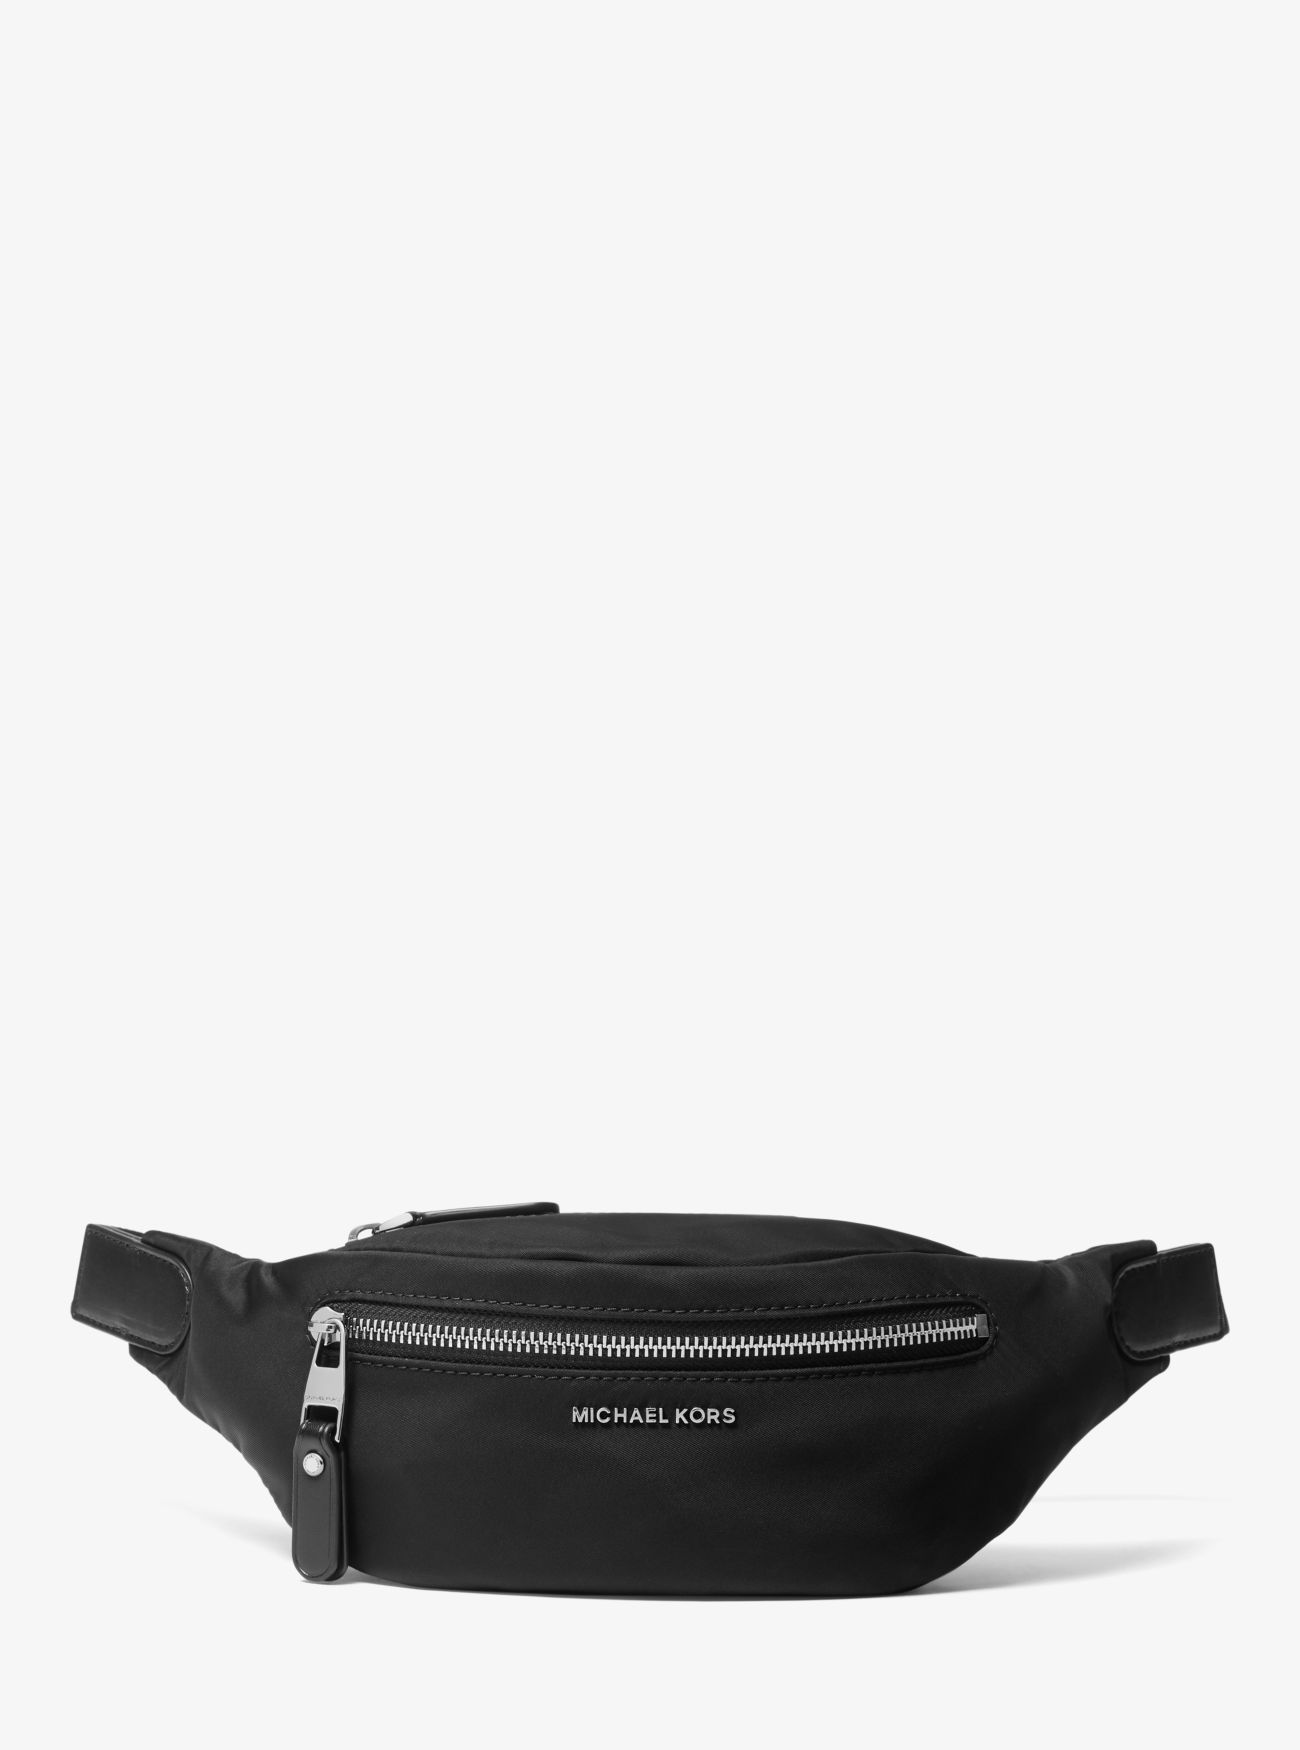 MK Hudson Medium Nylon Belt Bag - Black - Michael Kors